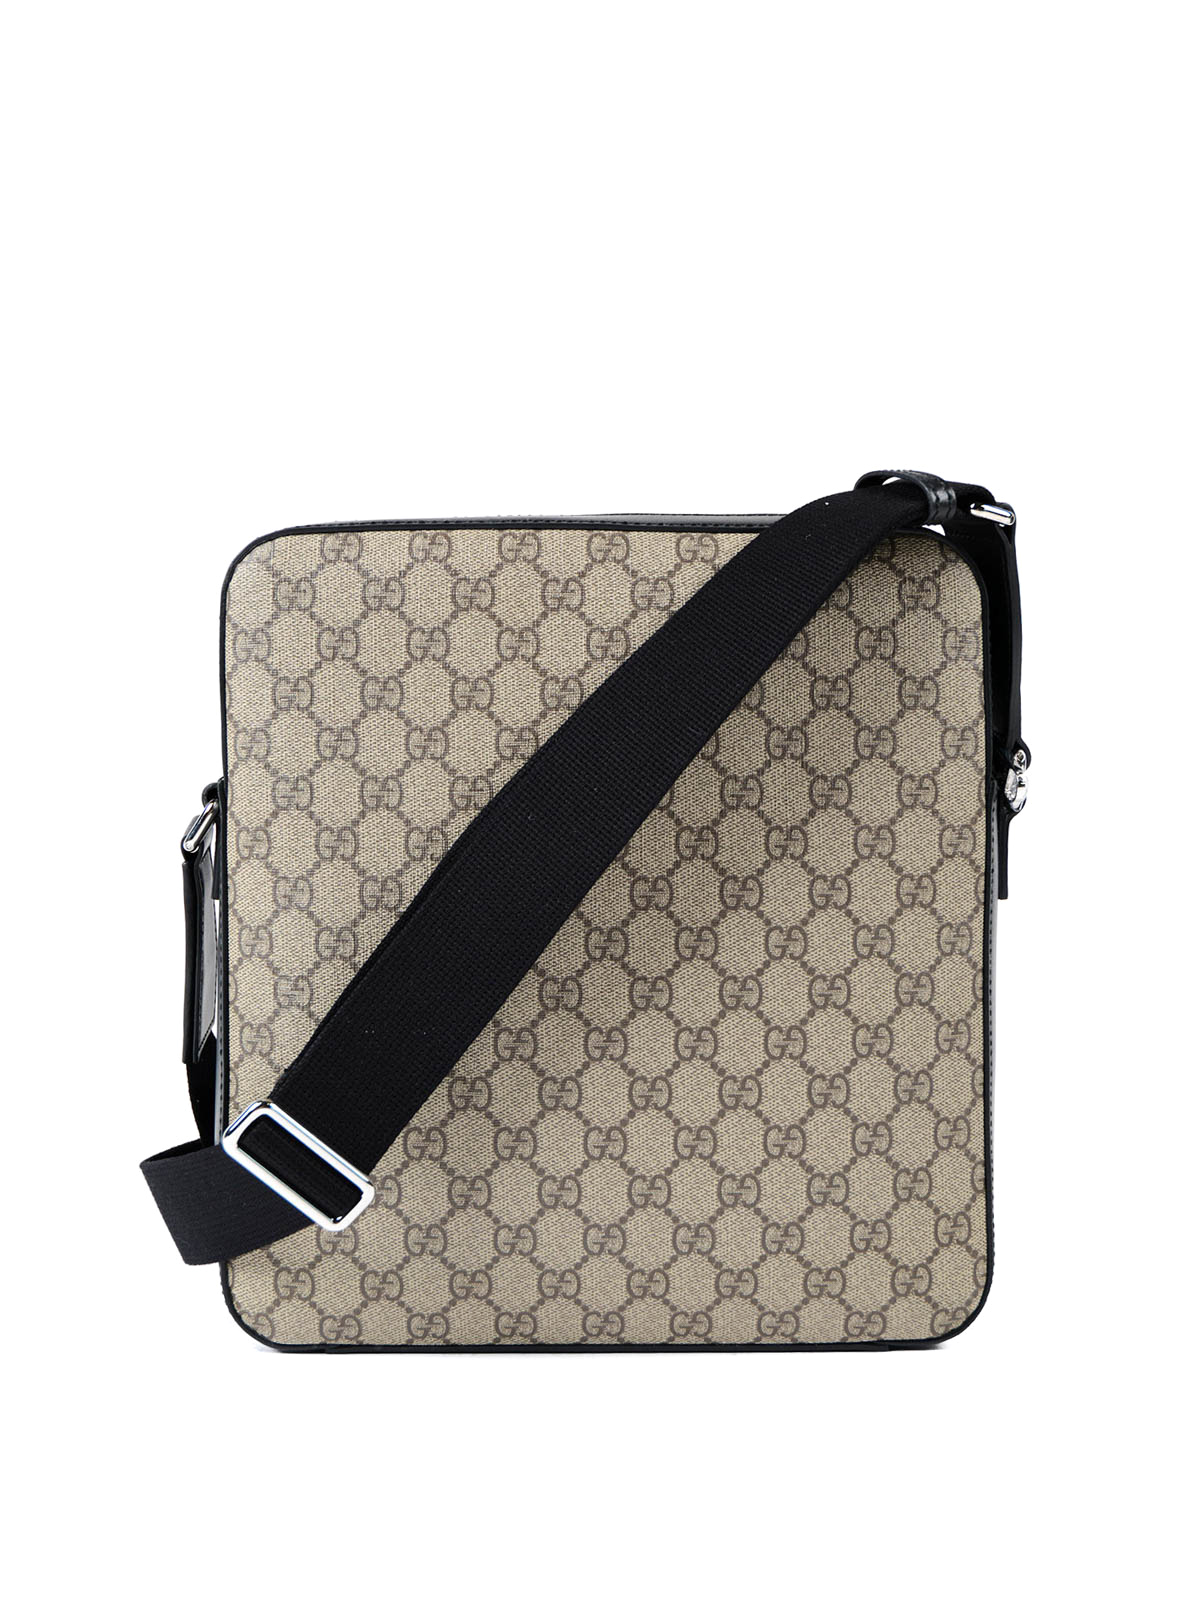 Gucci Messenger Bag | Online